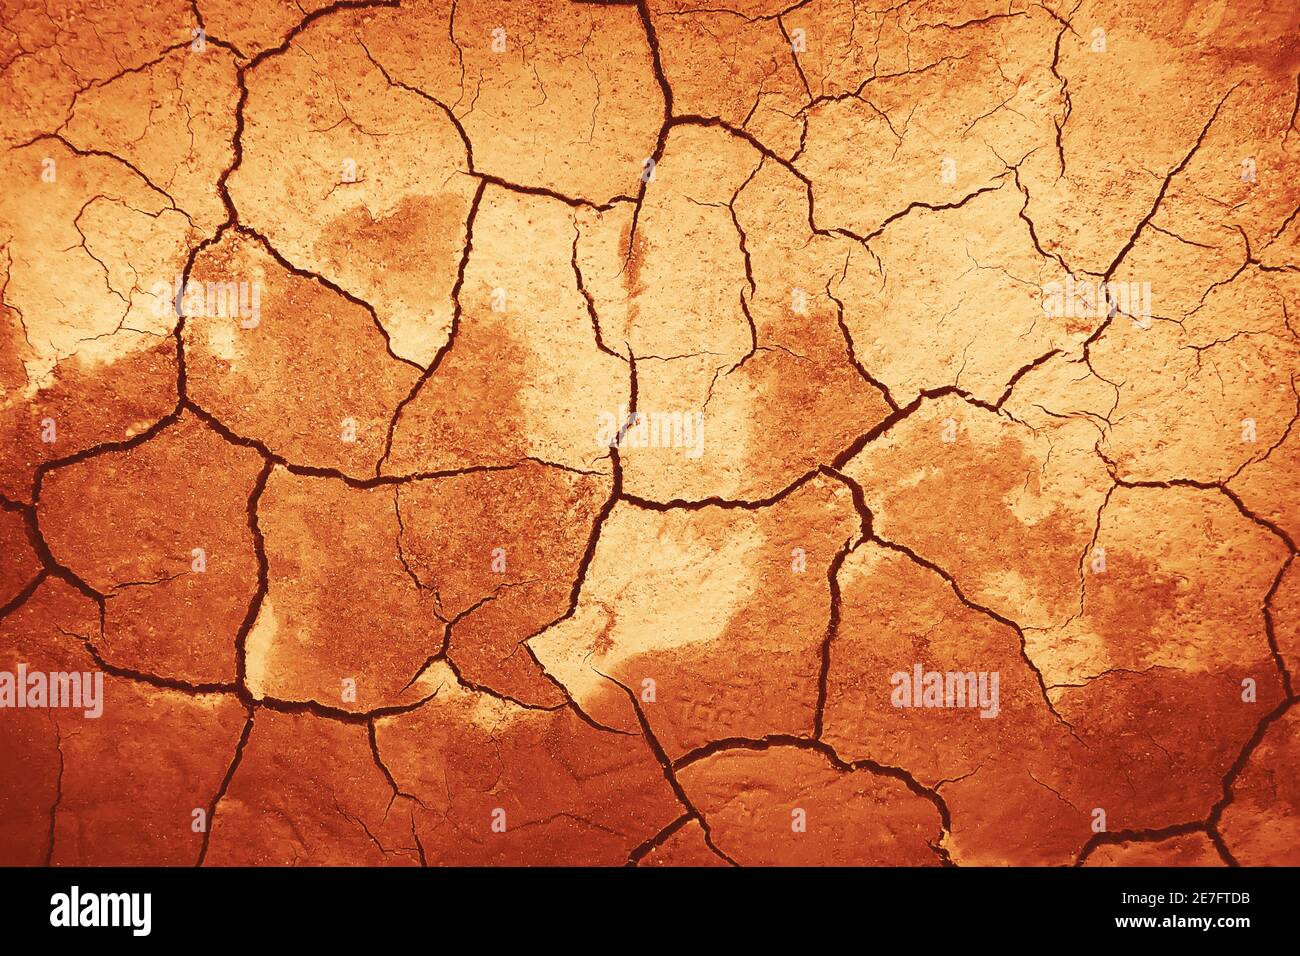 Der Hintergrund zeigt trockene, tote, rissige Erde in einer heißen Wüste, beleuchtet von hellem Sonnenlicht. Ödland und Strahlung. Stockfoto